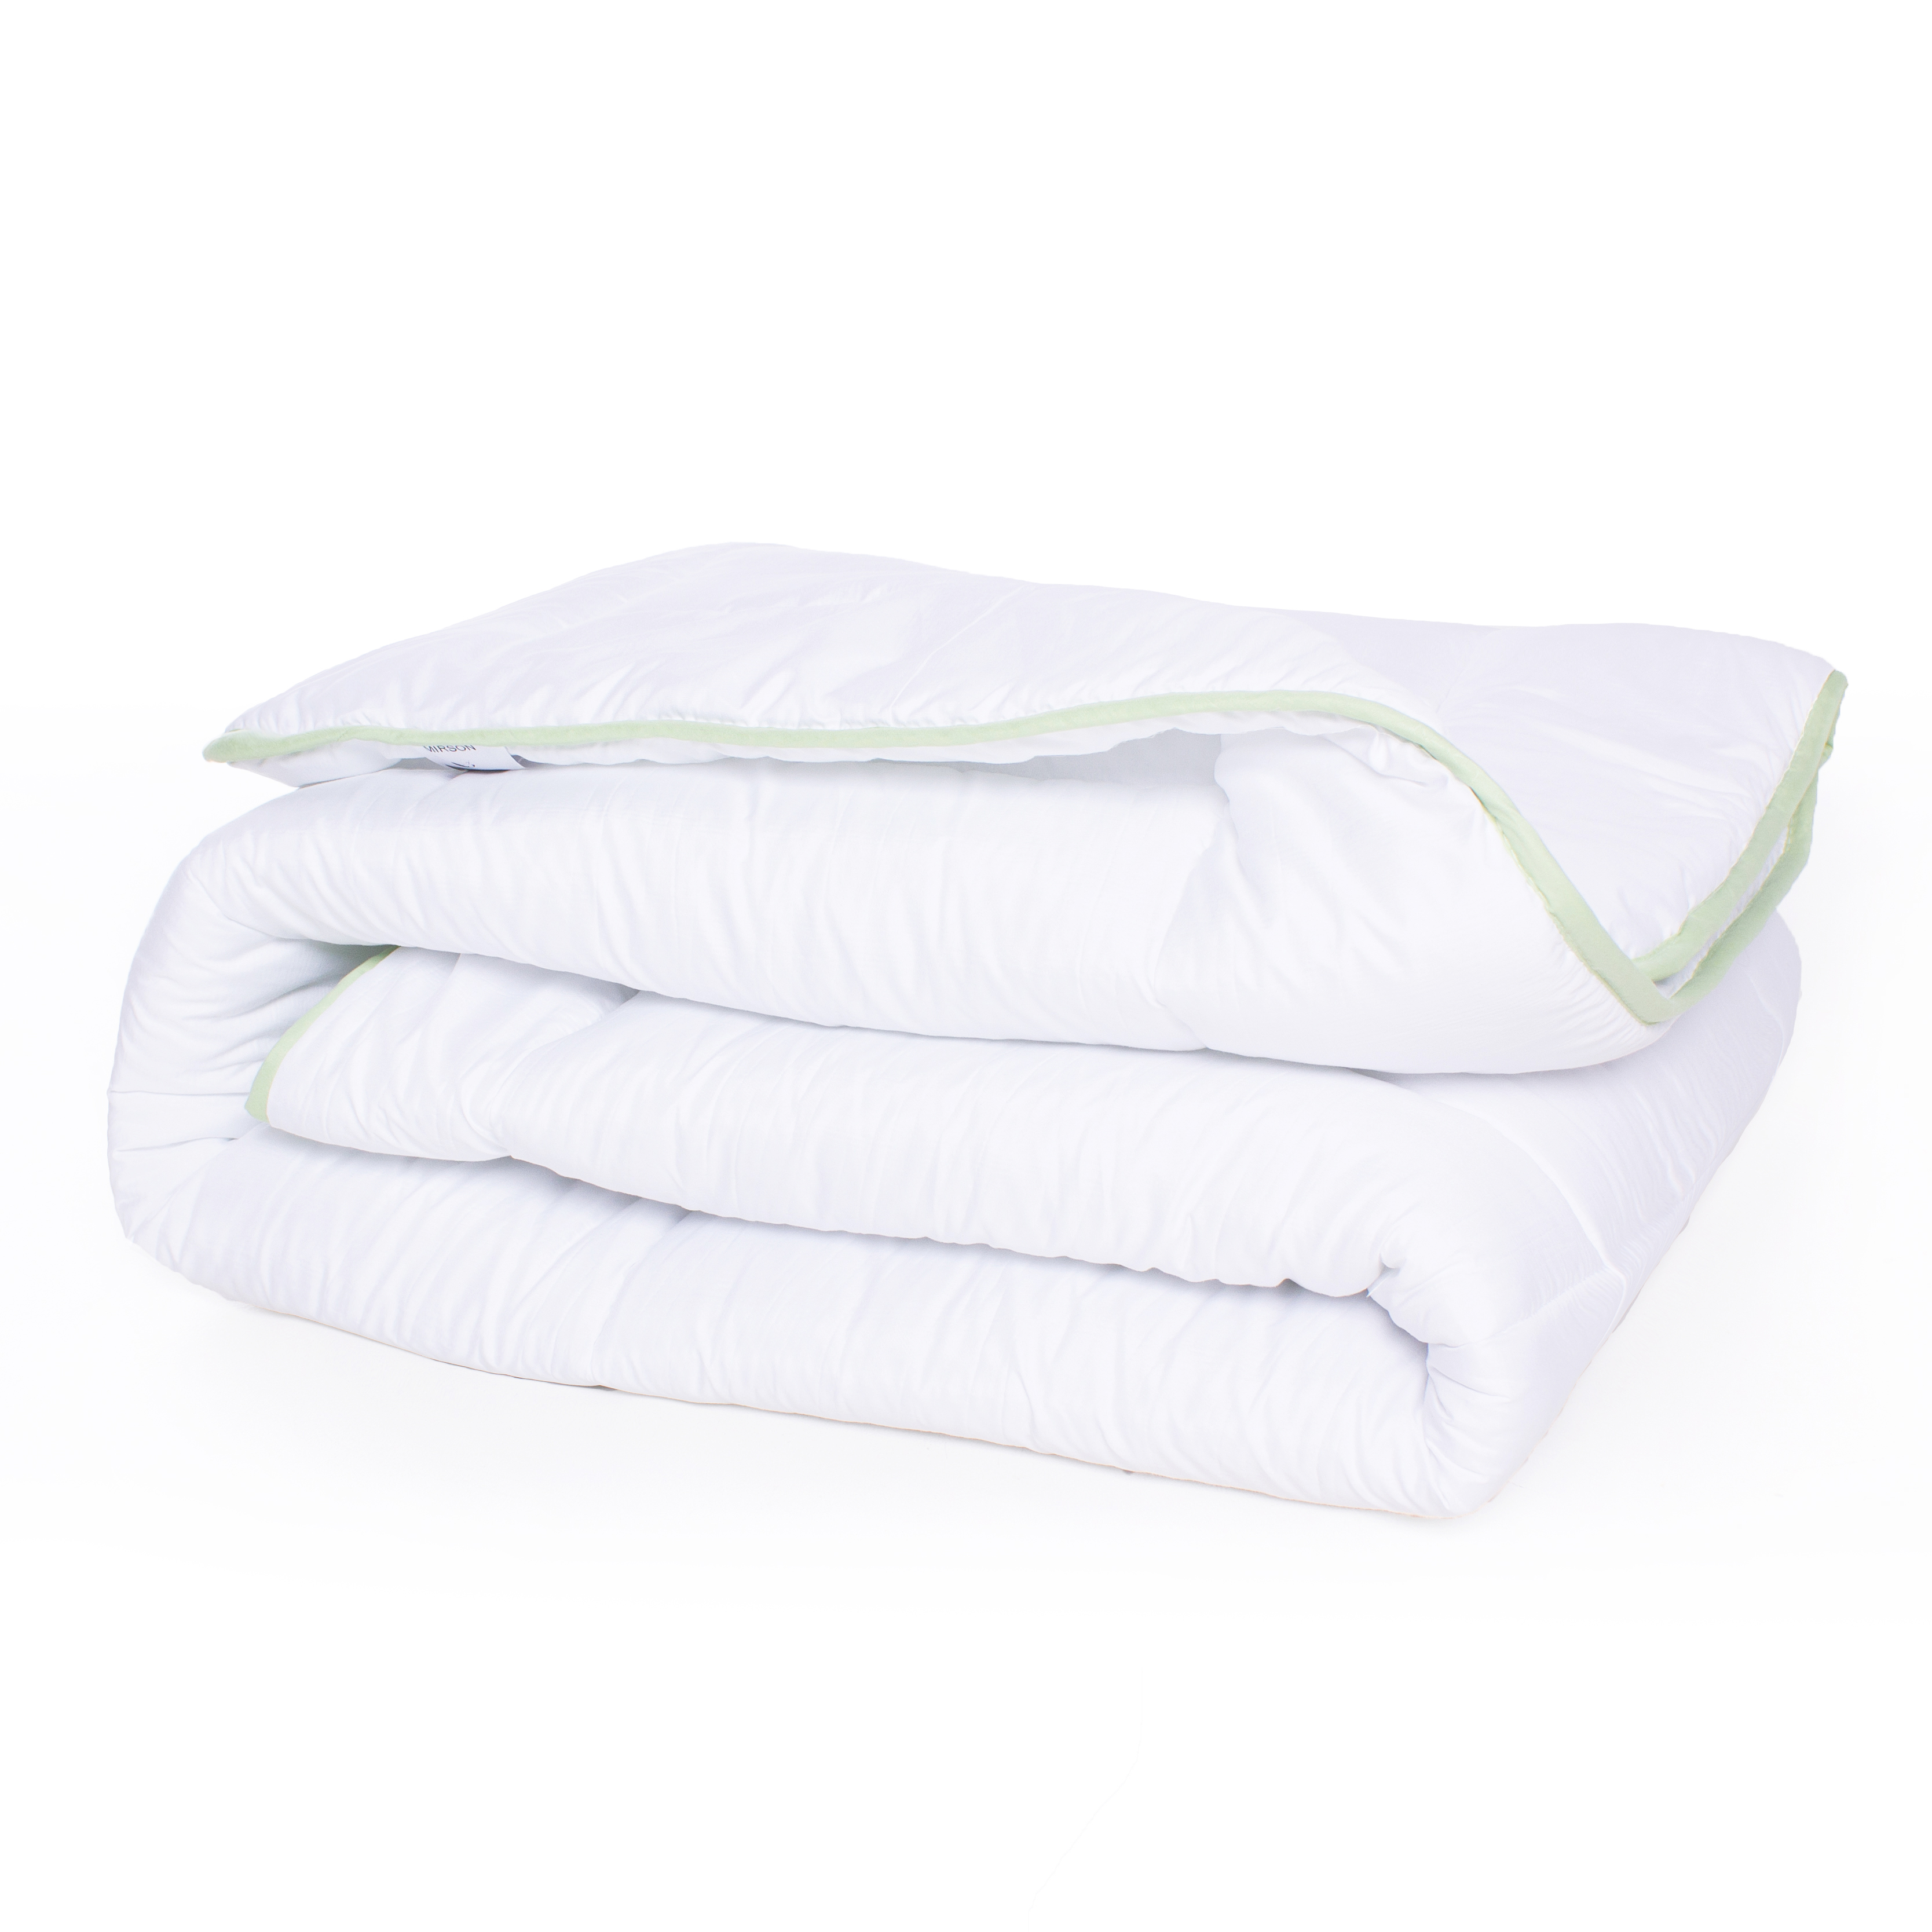 Одеяло антиаллергенное MirSon EcoSilk №002, демисезонное, 200x220 см, белое (8062533) - фото 2